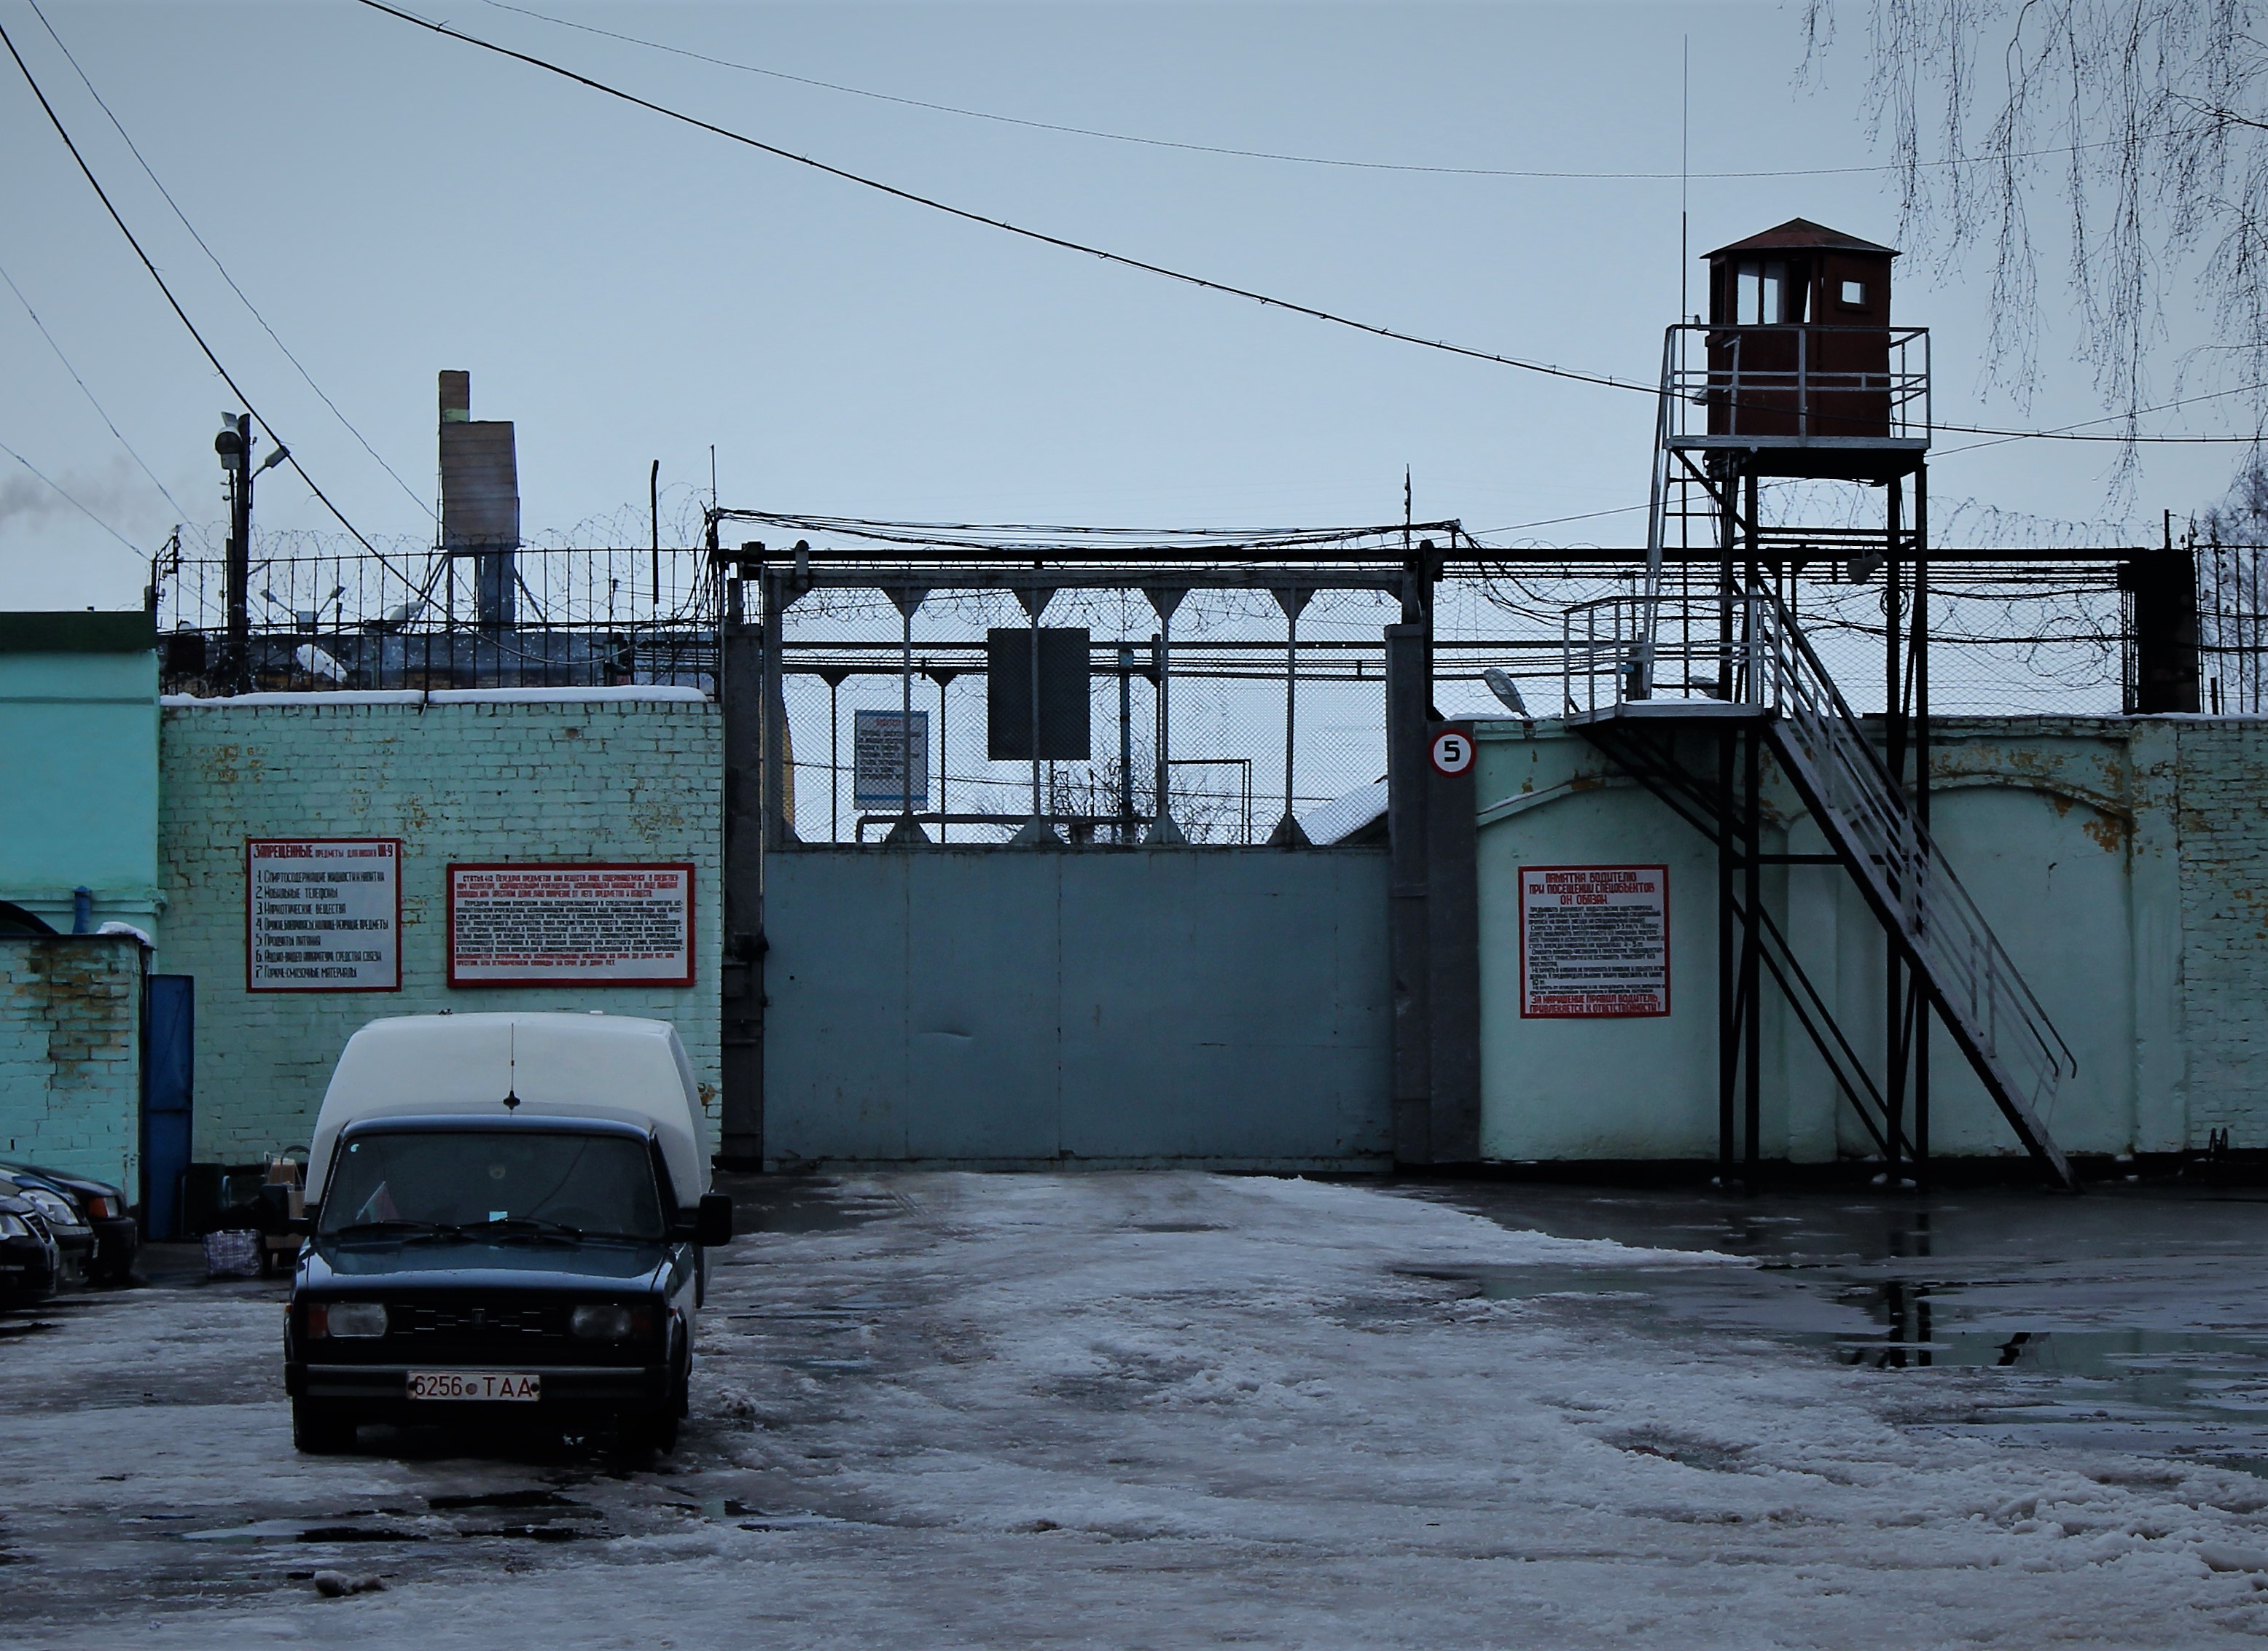 Наблюдательной комиссии Могилевской области перекрыли доступ к политзаключенным